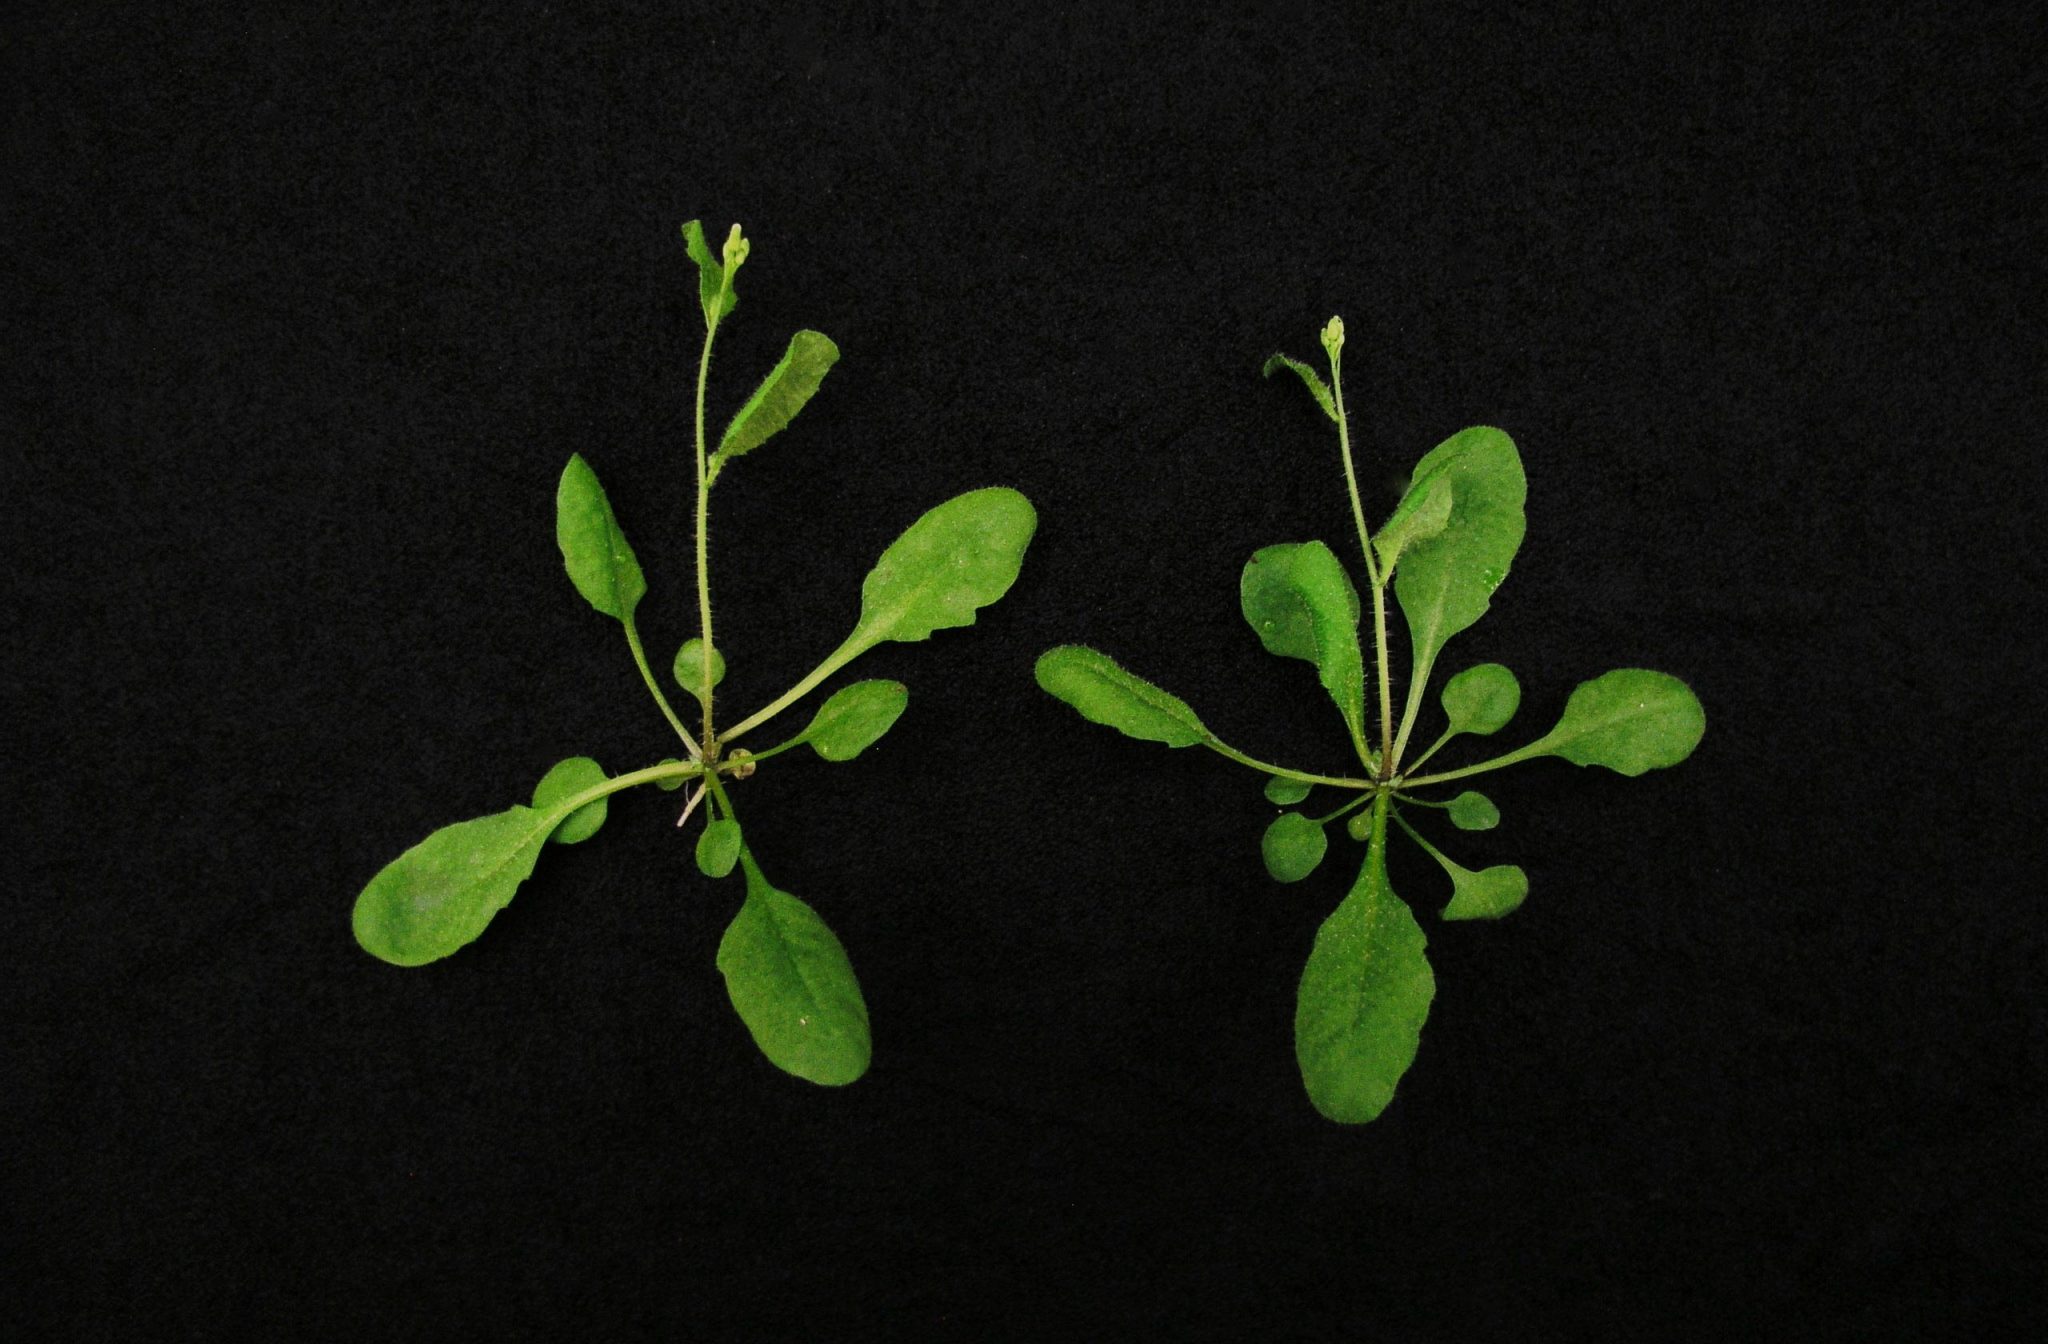 新CRISPR/Cas9植物技术将能提高农业产量并抵御气候变化影响